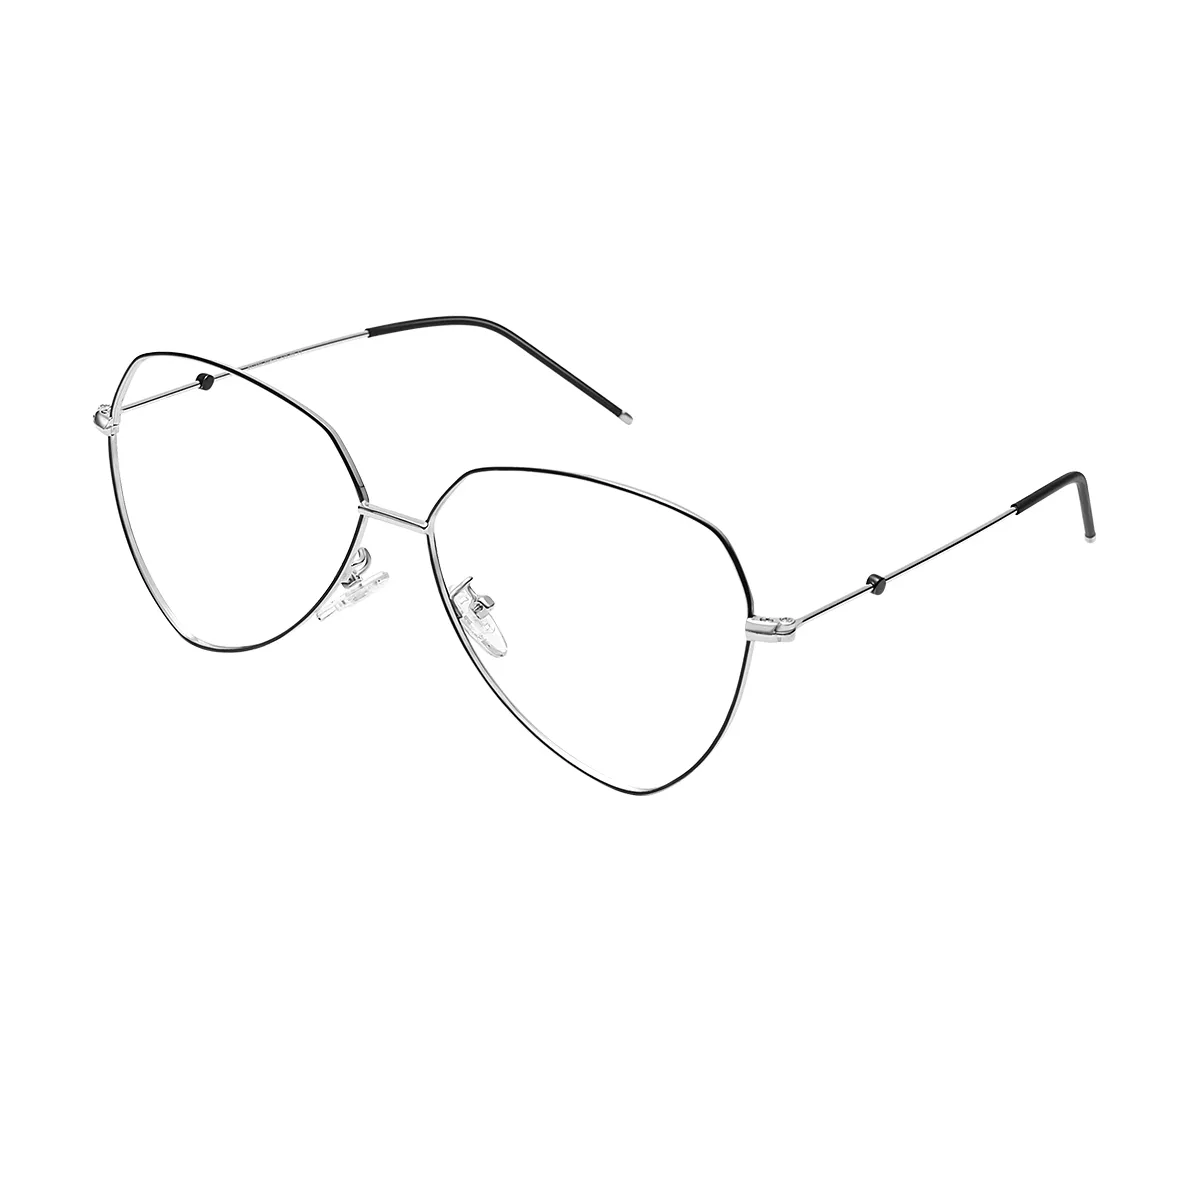 Spicer - Geometric Black-Silver Glasses for Men & Women